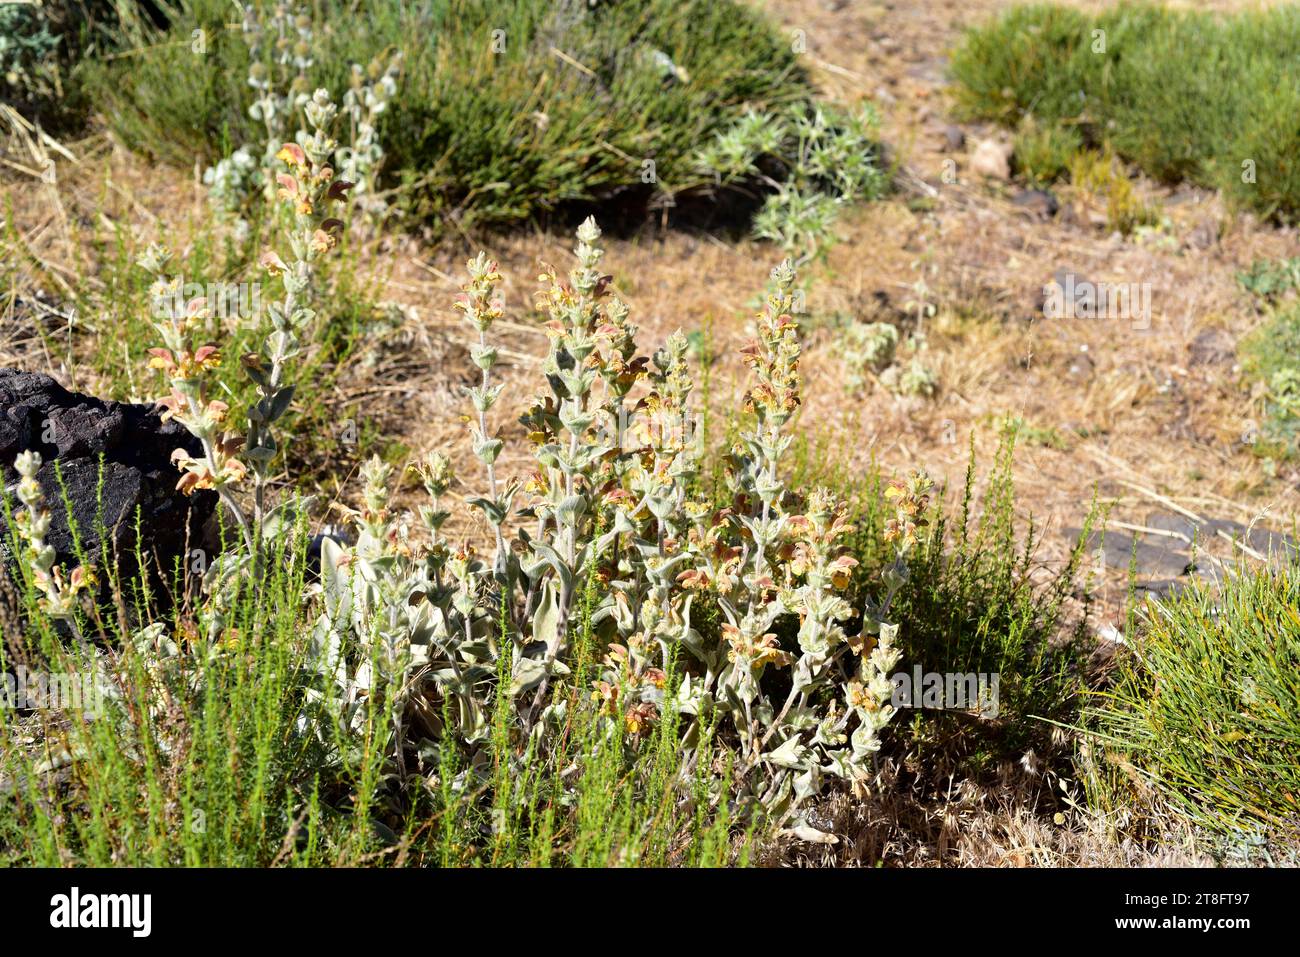 La barba de macho (Phlomis crinita malacitana) è una pianta perenne endemica delle montagne dell'Andalusia meridionale. Questa foto è stata scattata nella Sierra Nevada, Grana Foto Stock